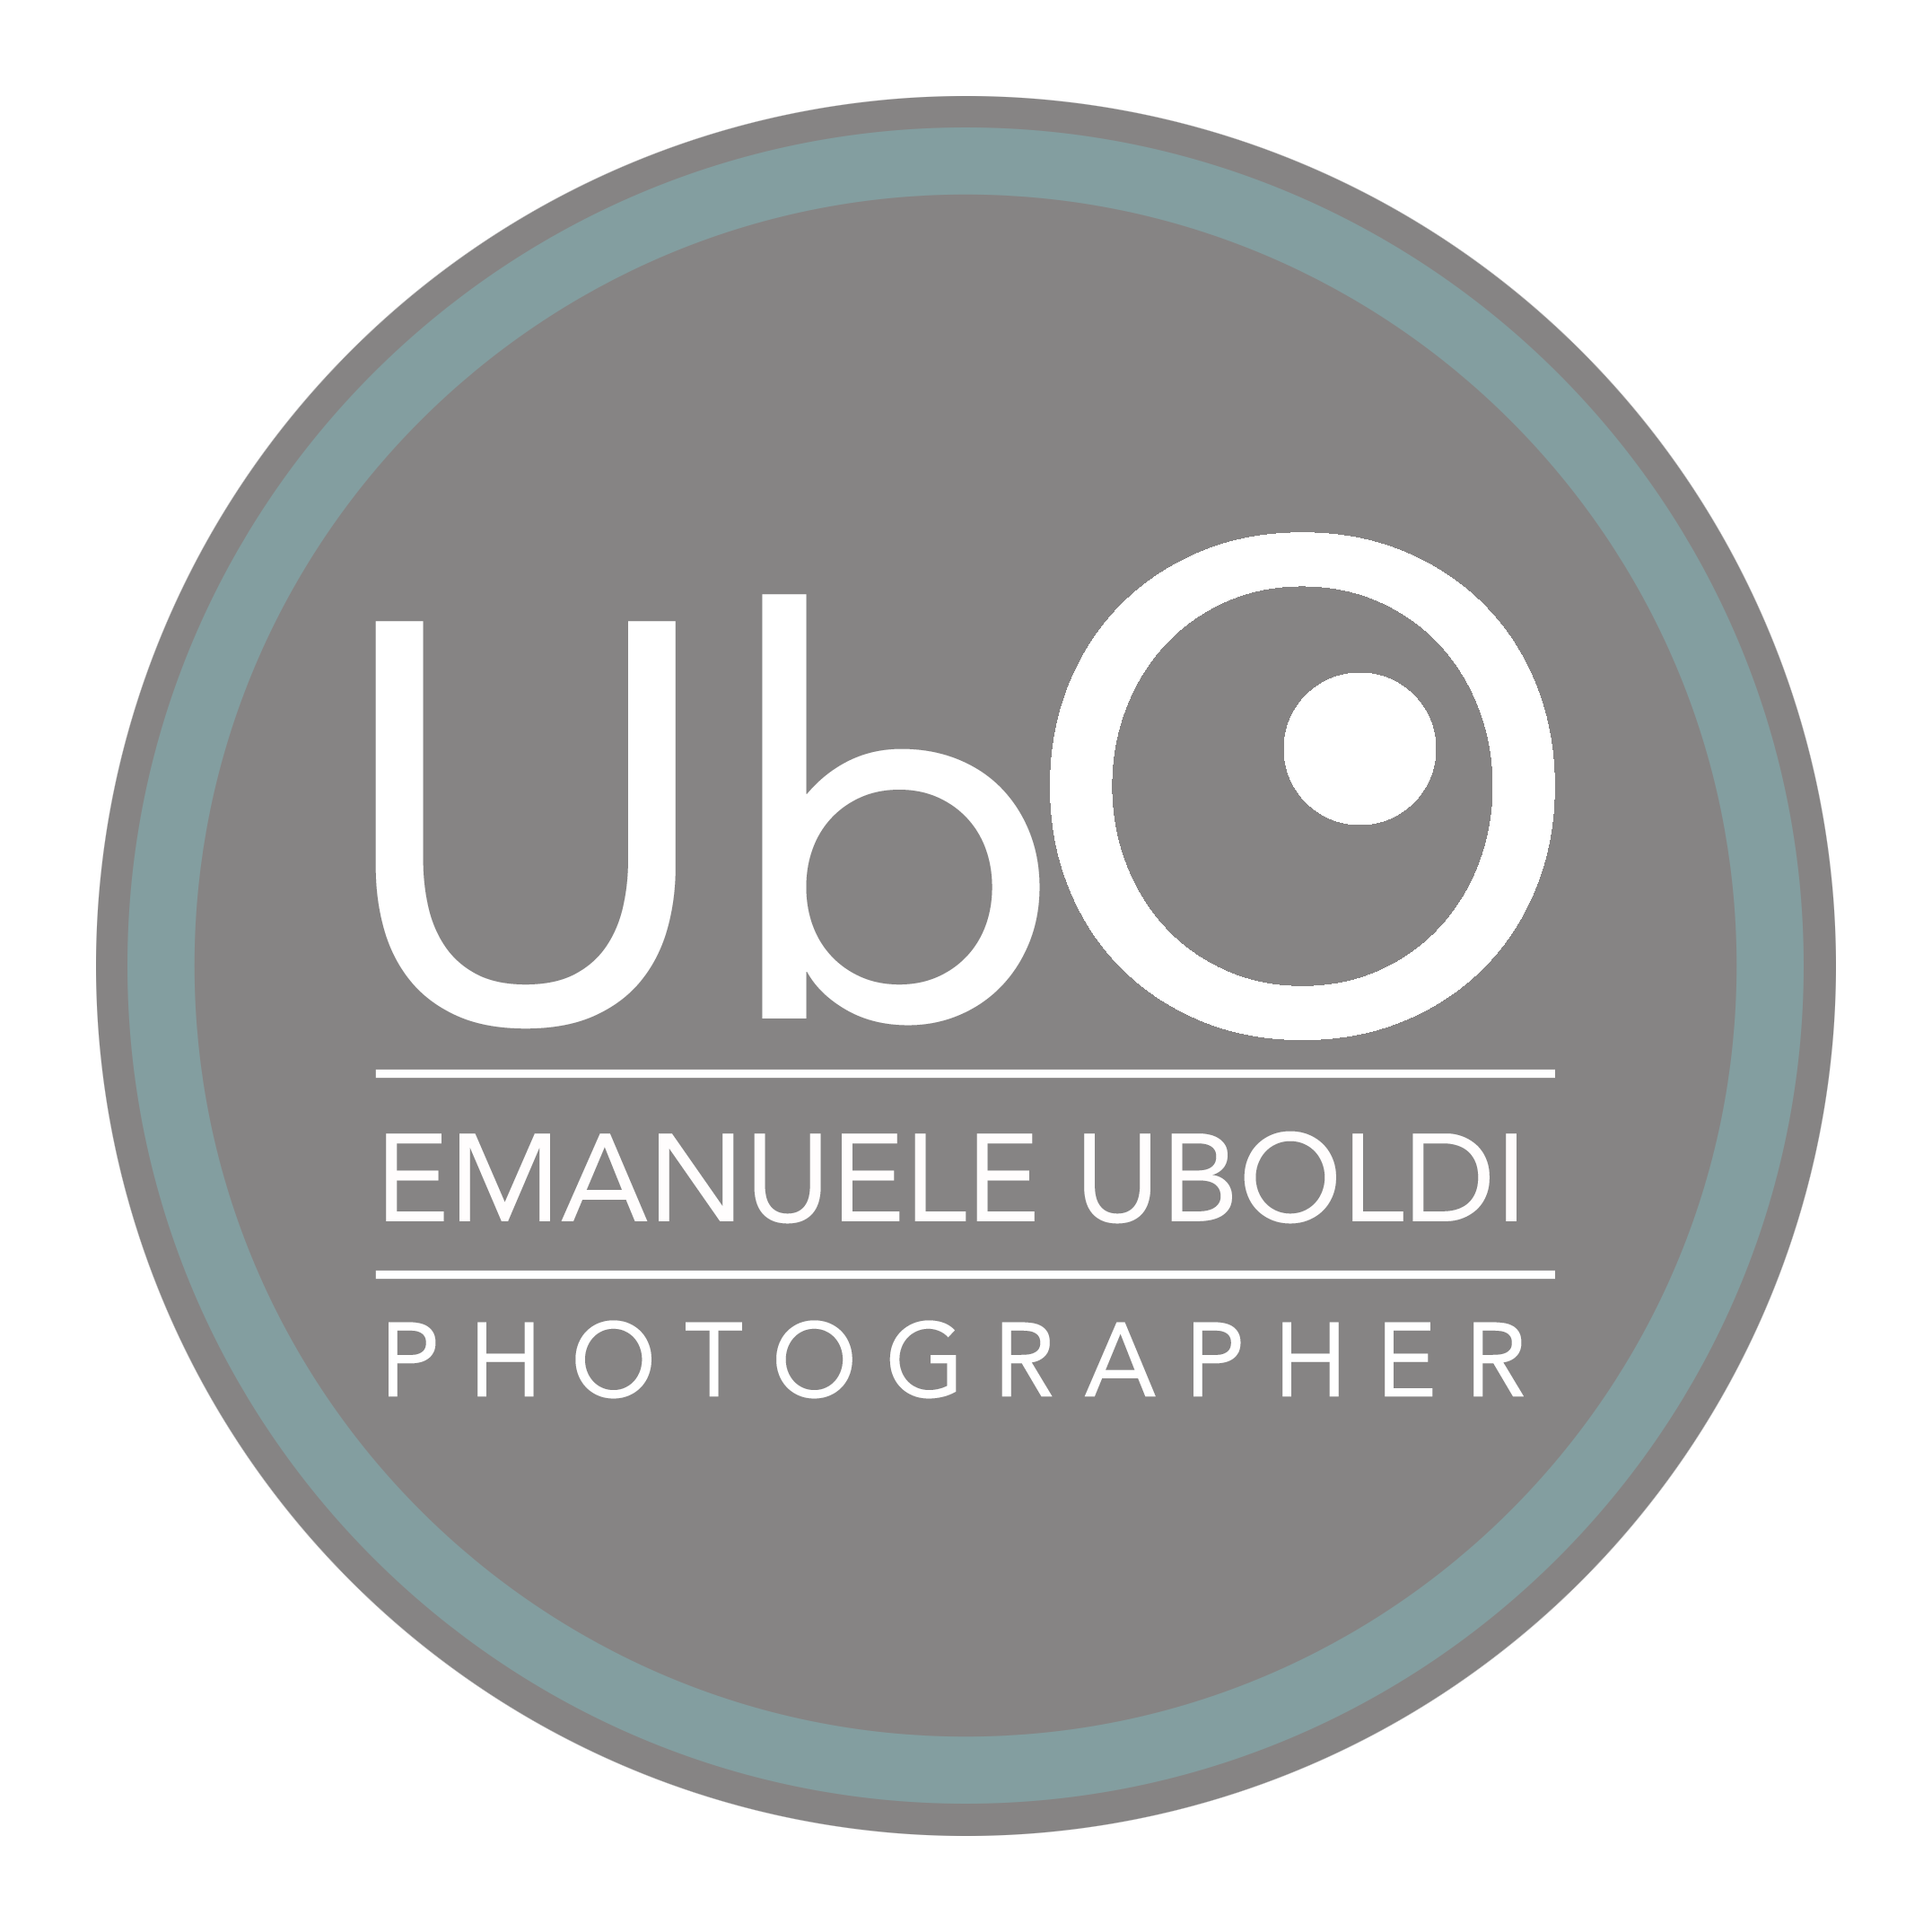 Blog - Emanuele Uboldi Studio Ubo Photographer